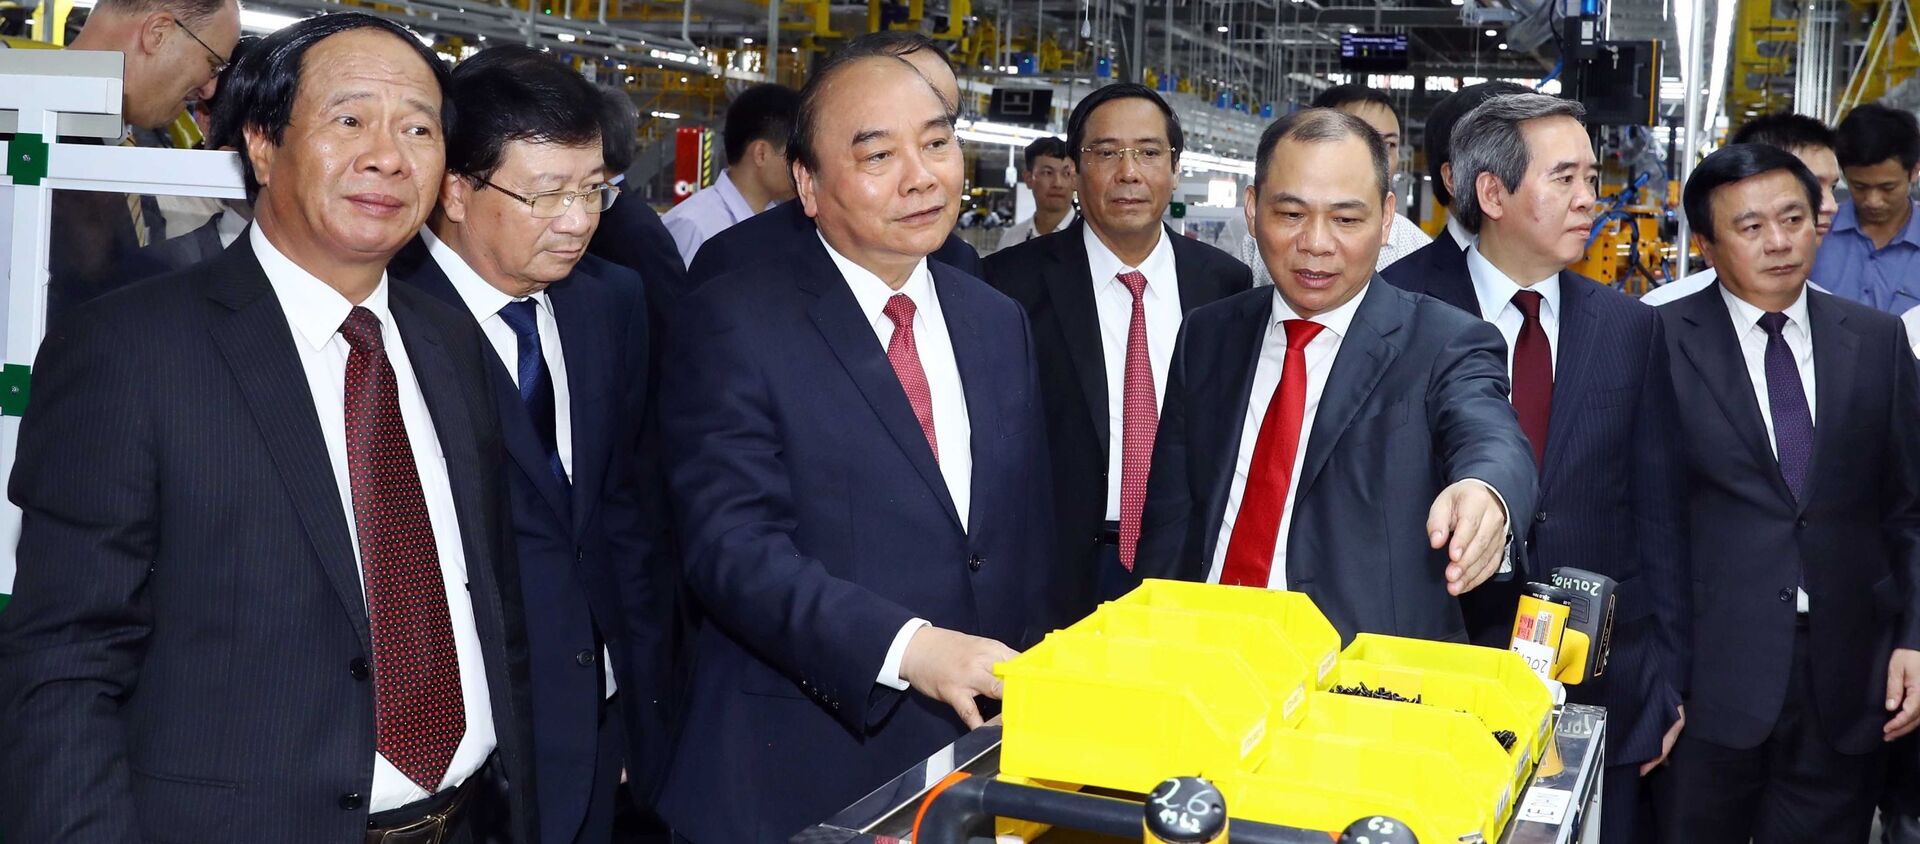 Thủ tướng Nguyễn Xuân Phúc và các đại biểu thăm xưởng lắp ráp Nhà máy sản xuất ô tô Vinfast.  - Sputnik Việt Nam, 1920, 20.06.2019